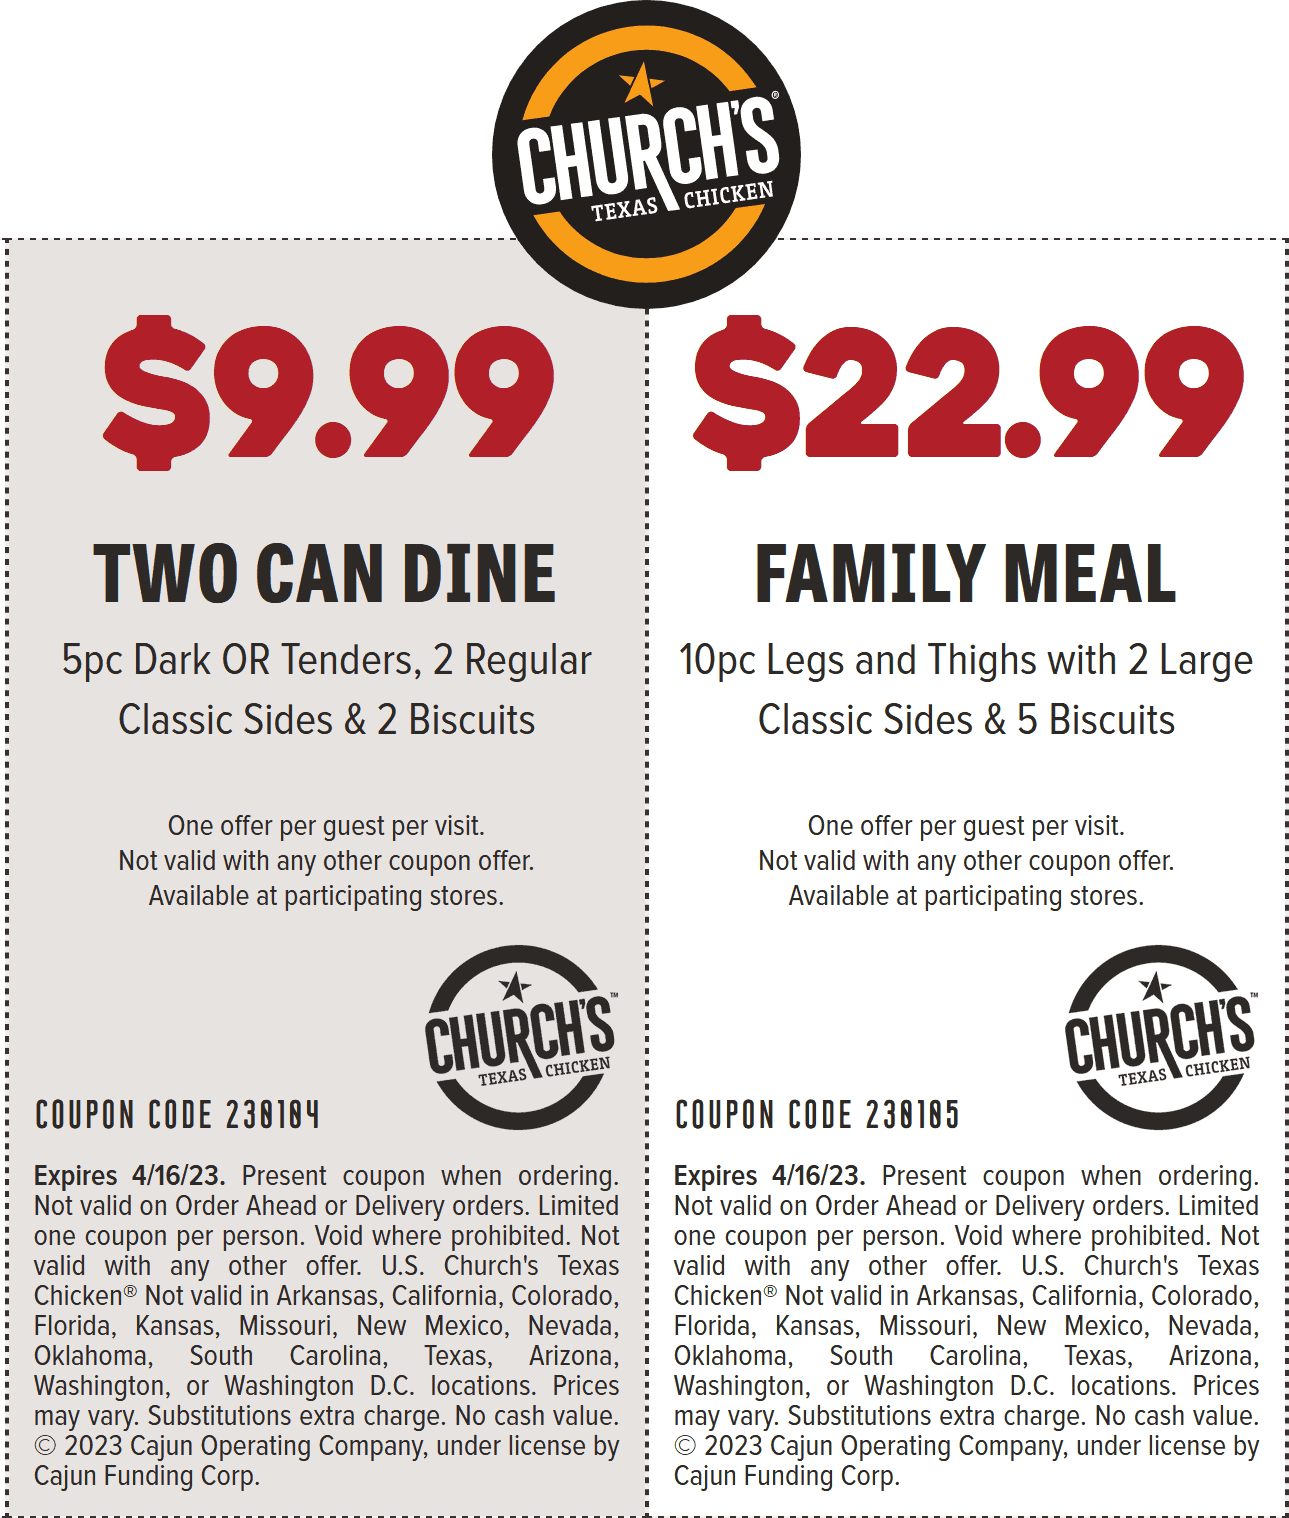 Churchs Chicken restaurants Coupon  5pc chicken + 2 sides + 2 biscuits = $10 at Churchs Chicken #churchschicken 